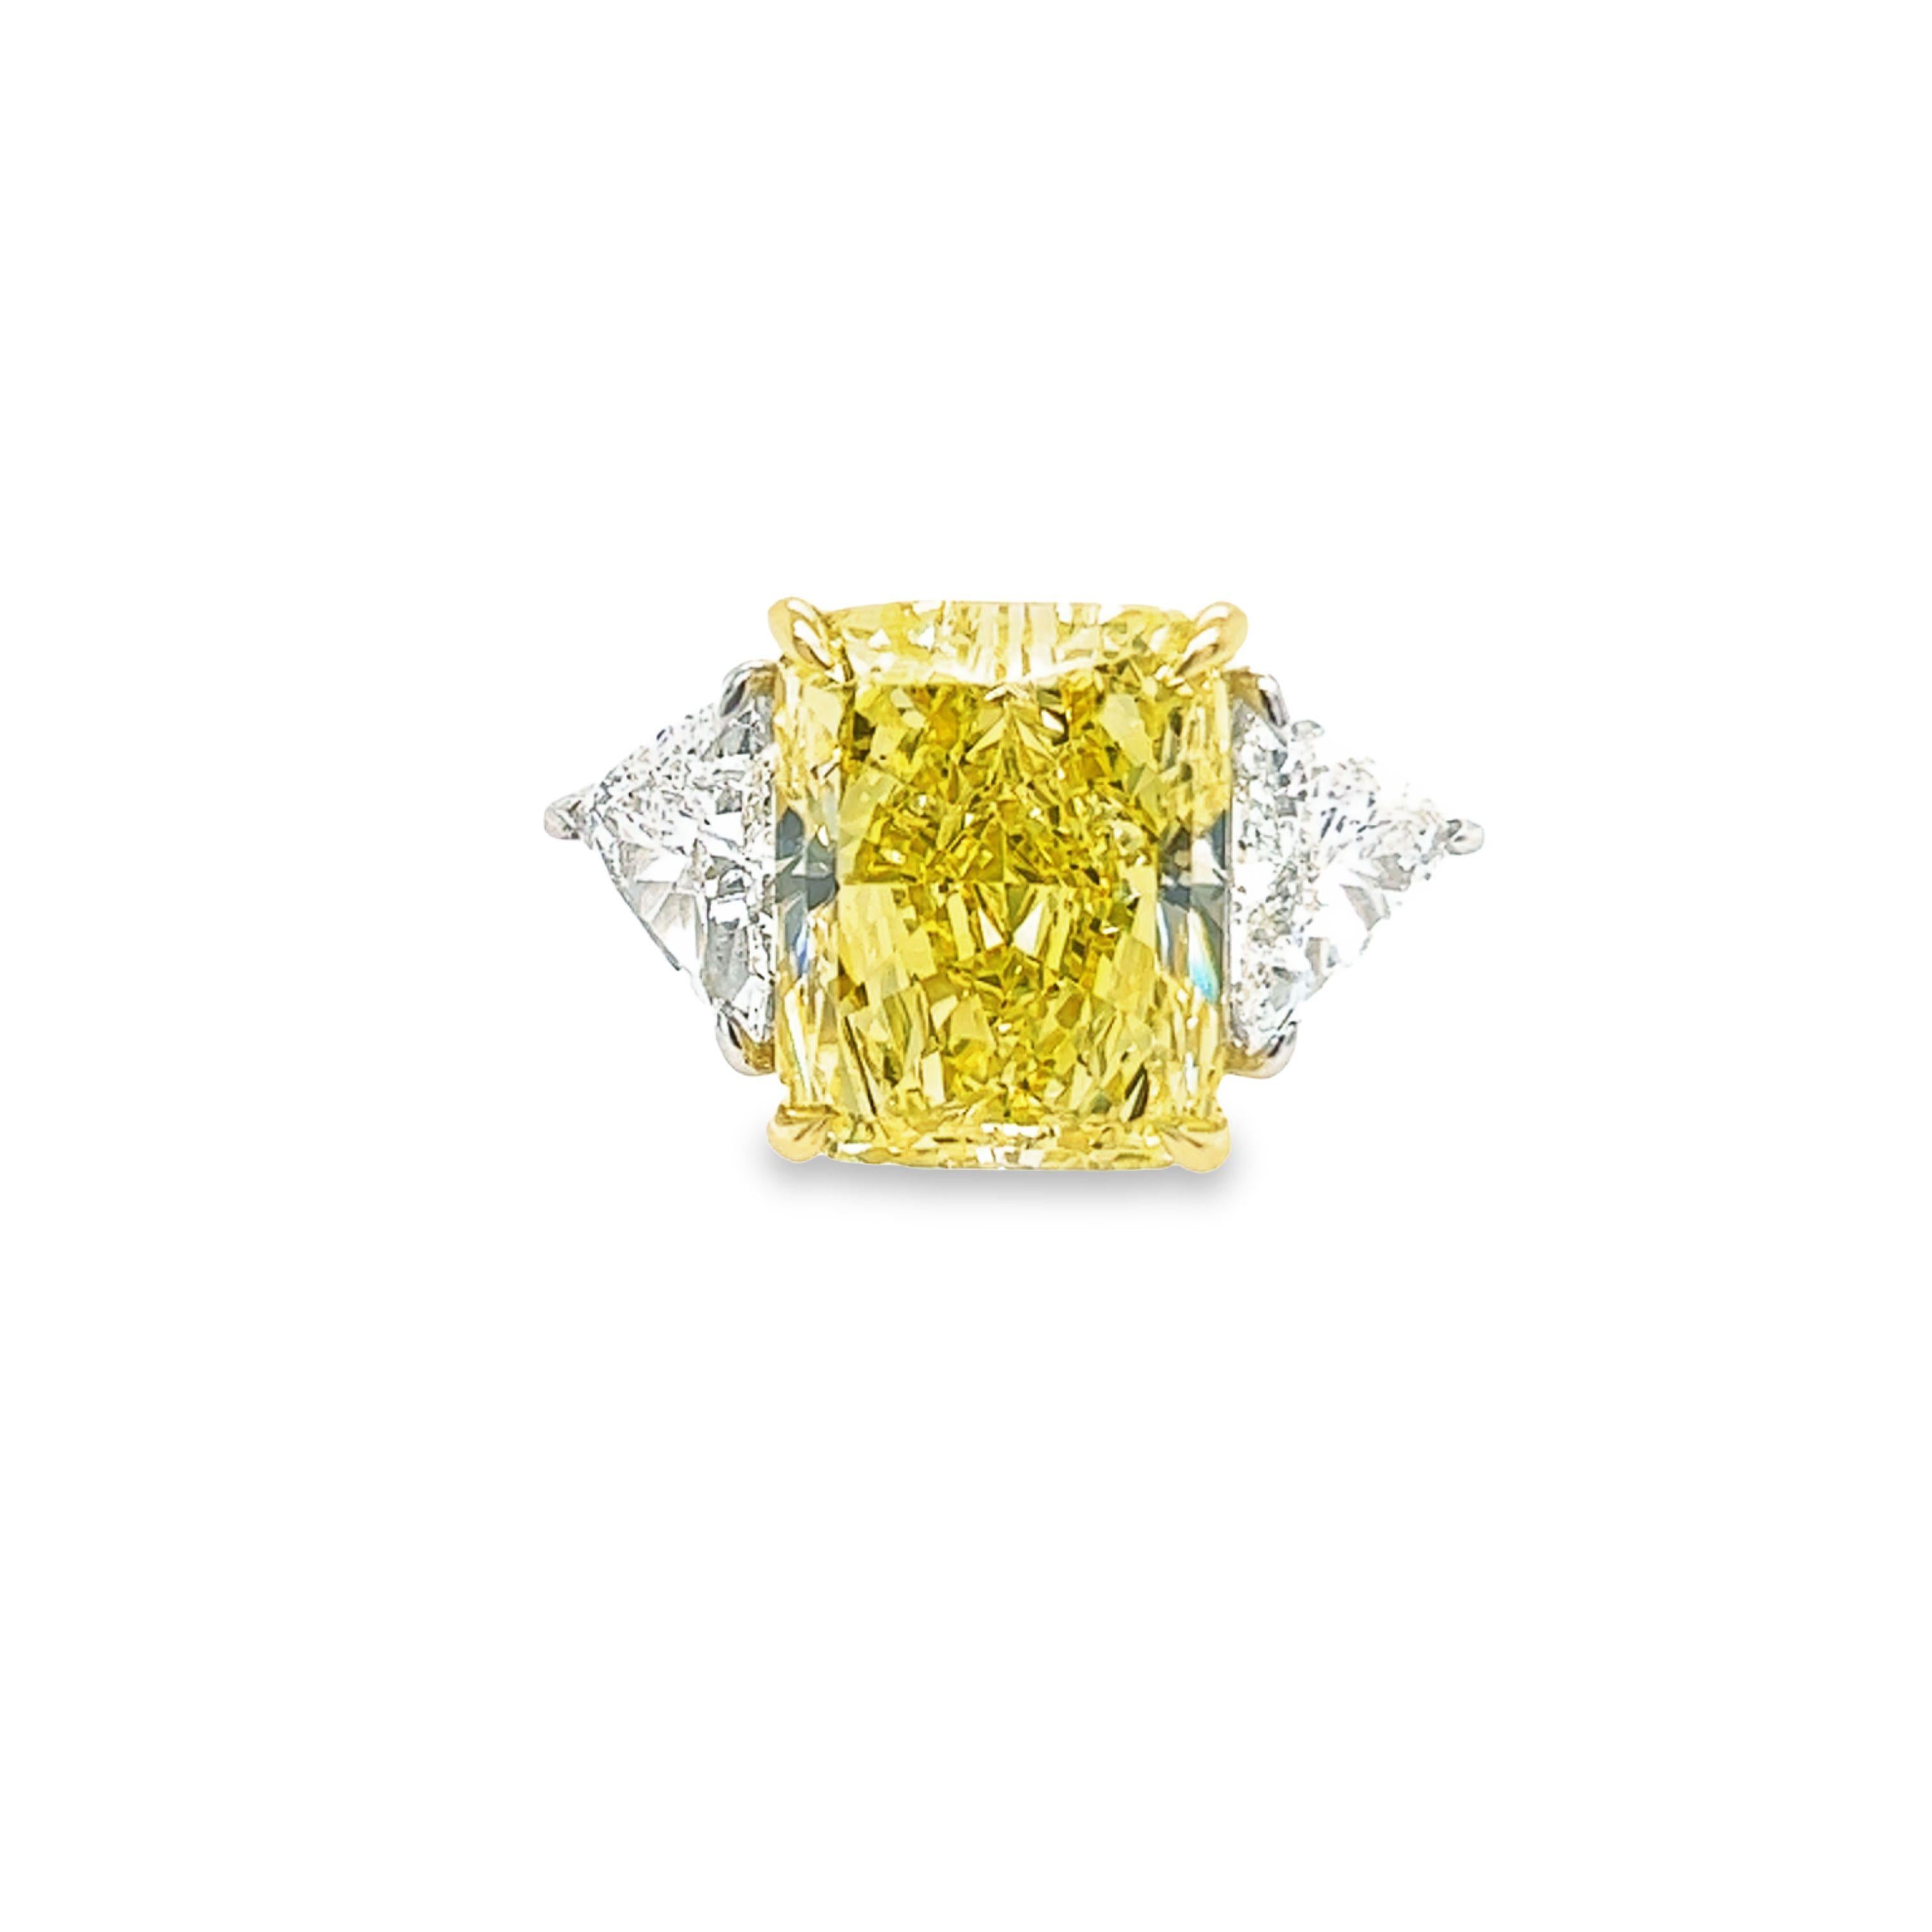 Rosenberg Diamonds and Co. Le diamant Radiant Cut Fancy Intense Yellow VS1 de 12,15 carats est accompagné d'un certificat GIA. Cette taille radieuse exquise est sertie dans une monture en platine et or jaune 18 carats faite à la main avec une paire